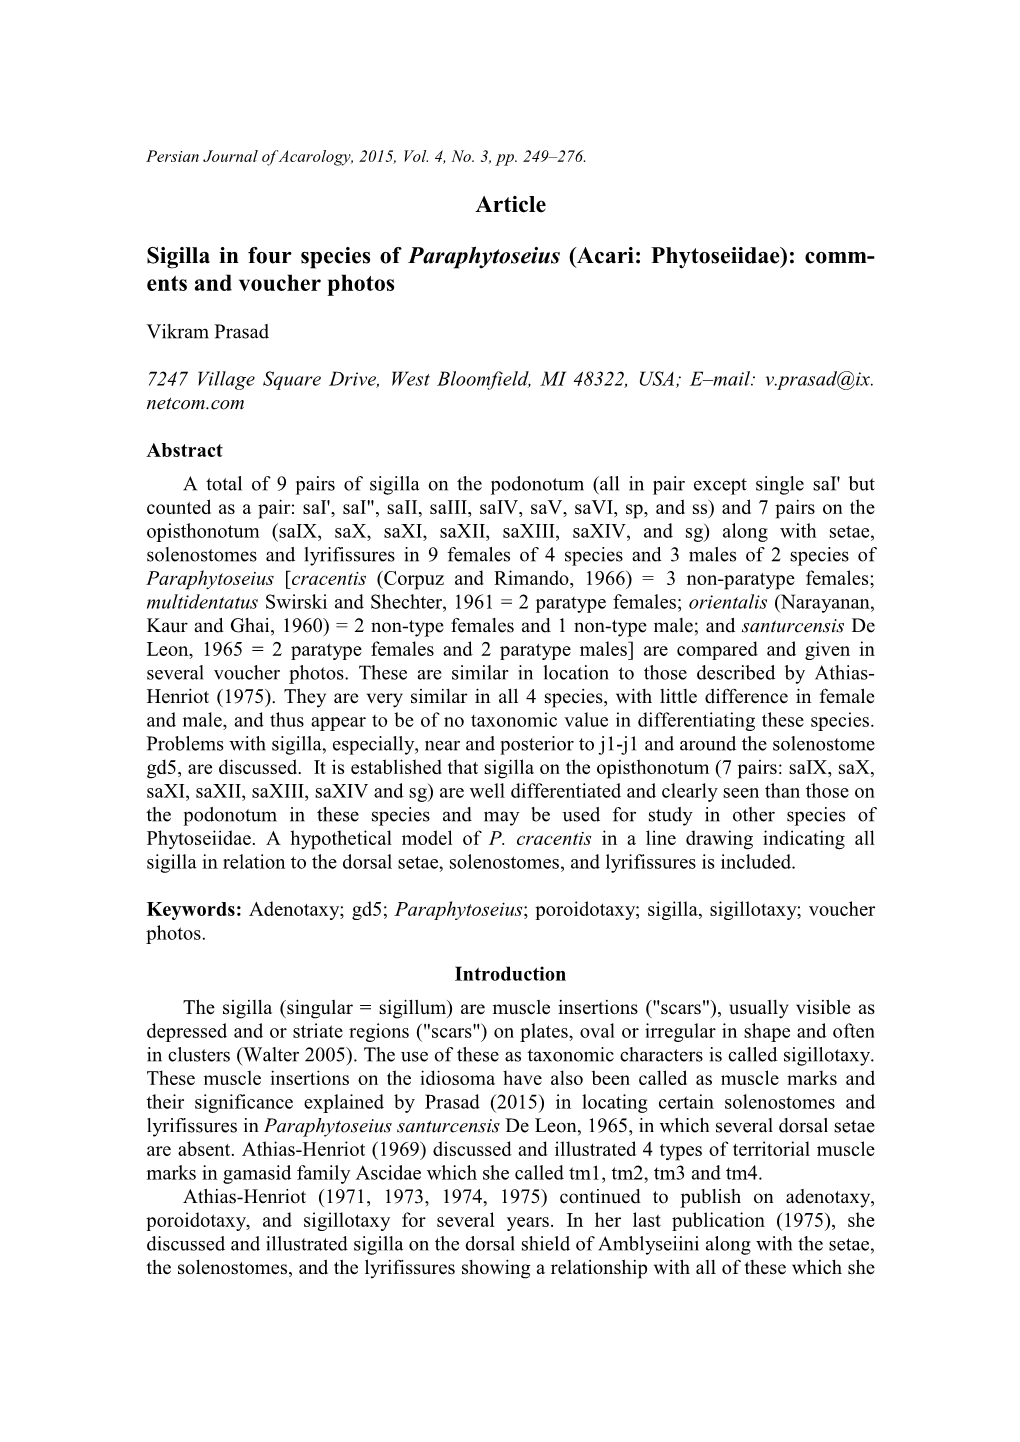 Article Sigilla in Four Species of Paraphytoseius (Acari